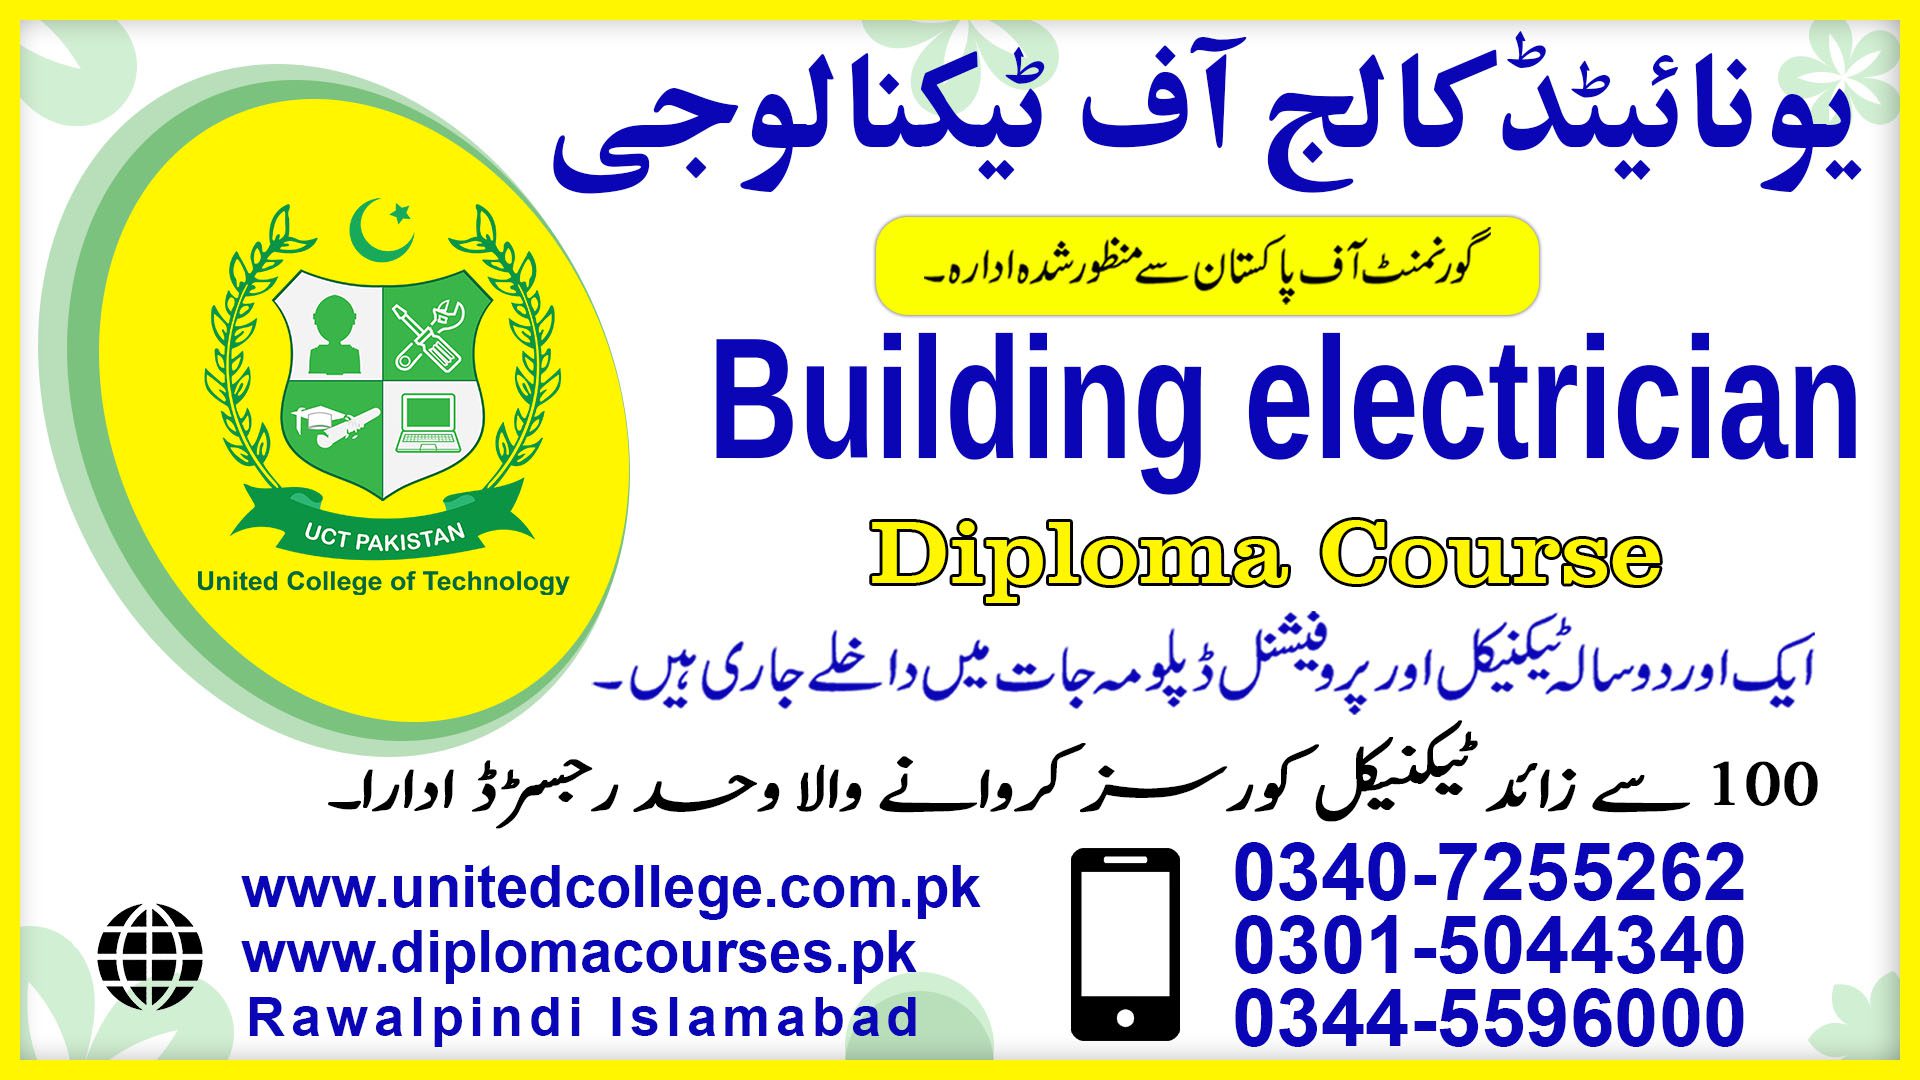 BUILDING ELECTRICIAN COURSE IN RAWALPINDI ISLAMABAD PAKISTAN